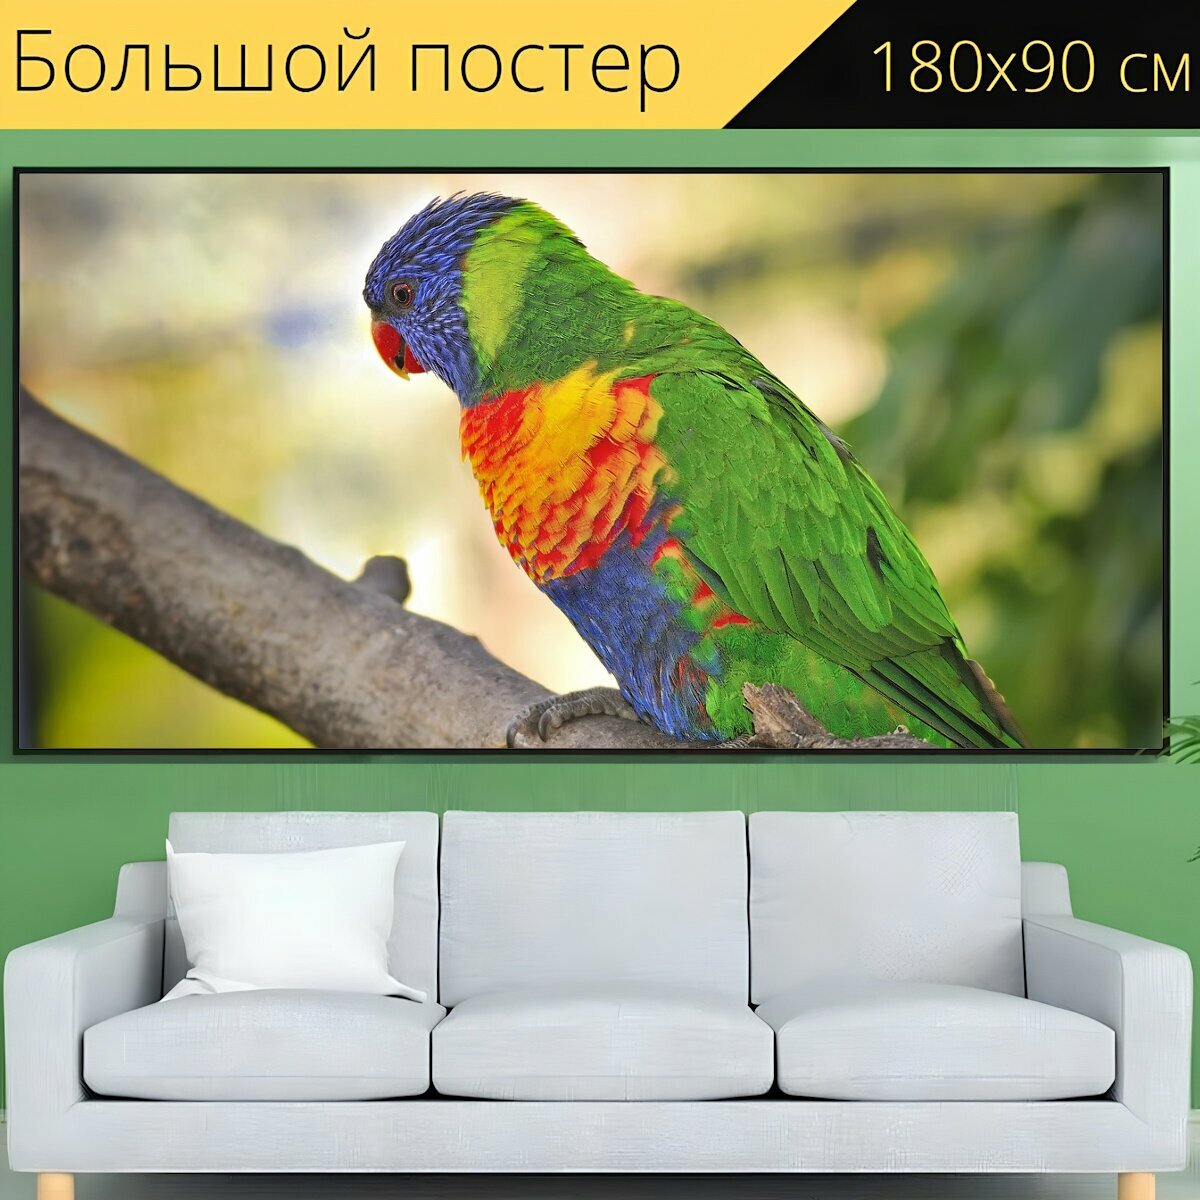 Большой постер "Животные попугай мускусный лорикет" 180 x 90 см. для интерьера